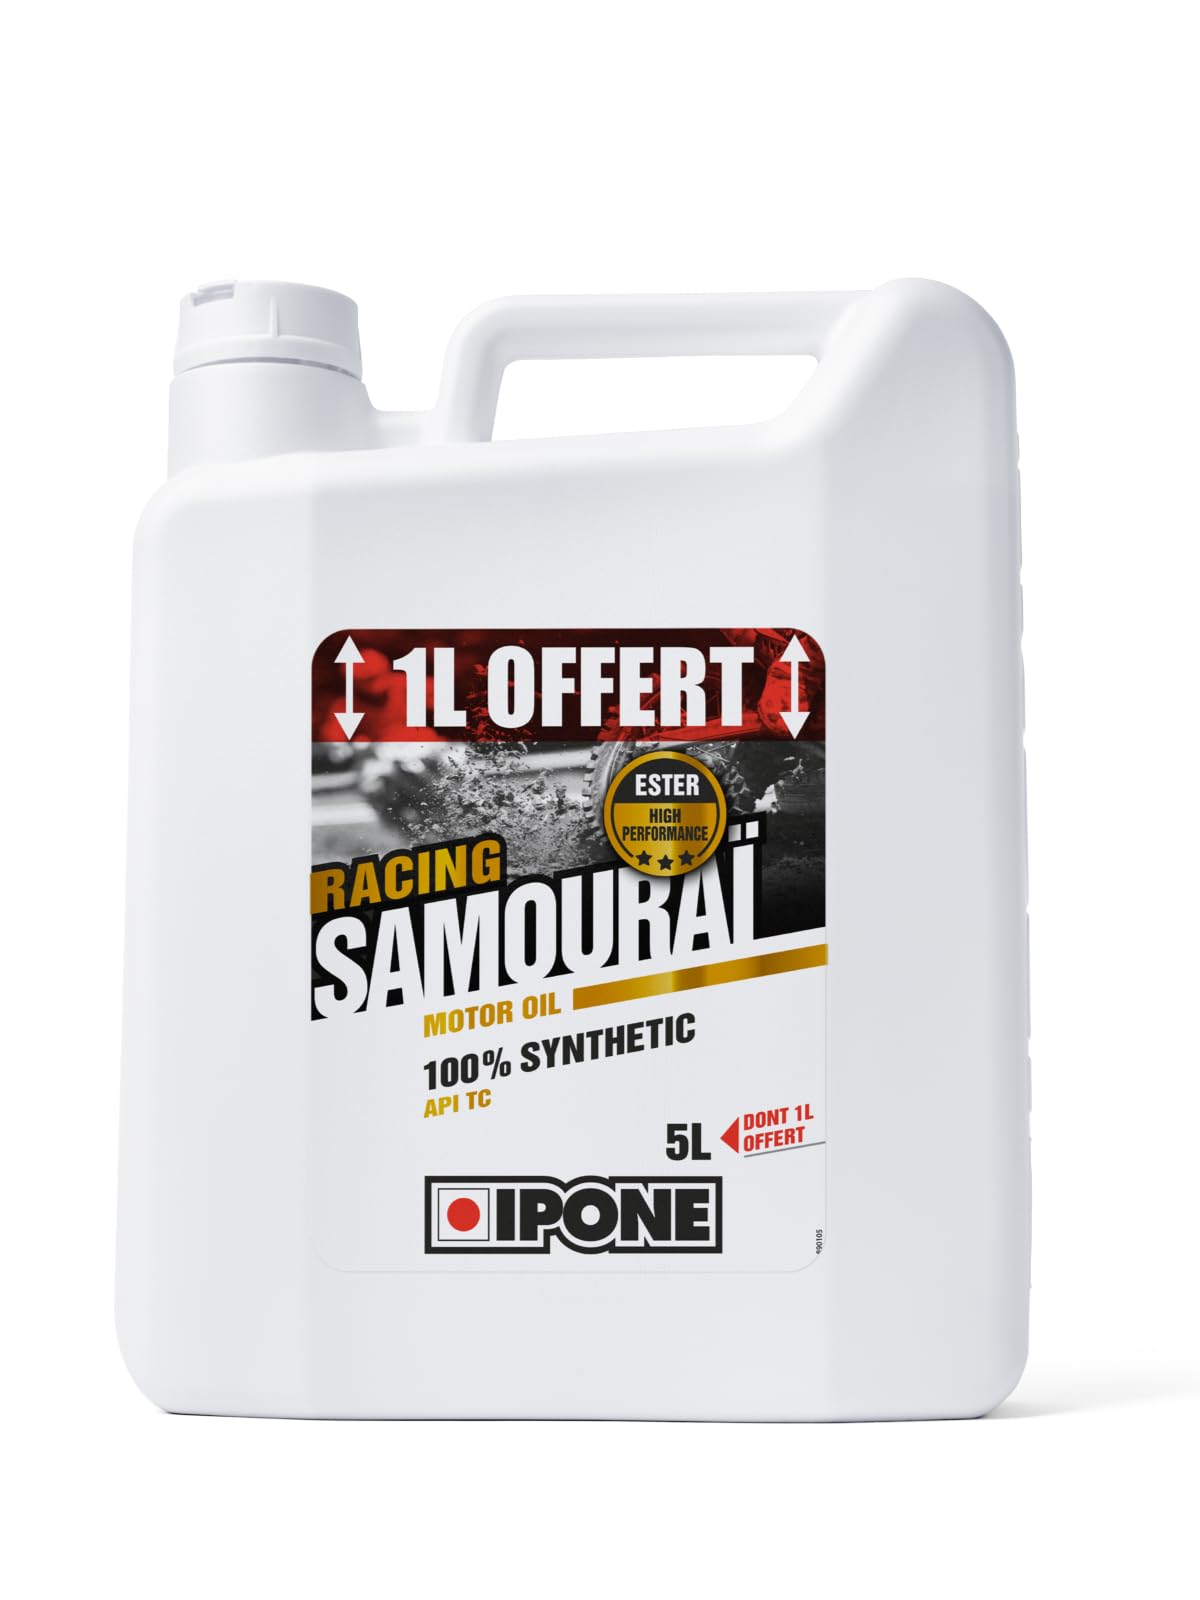 Ipone - Motorenöl Motorrad 2 Zeit Samurai Racing - 100% Synthetik mit Estern - Hochleistungsschmiermittel - Kanister 4 Liter + 1 Liter von Ipone